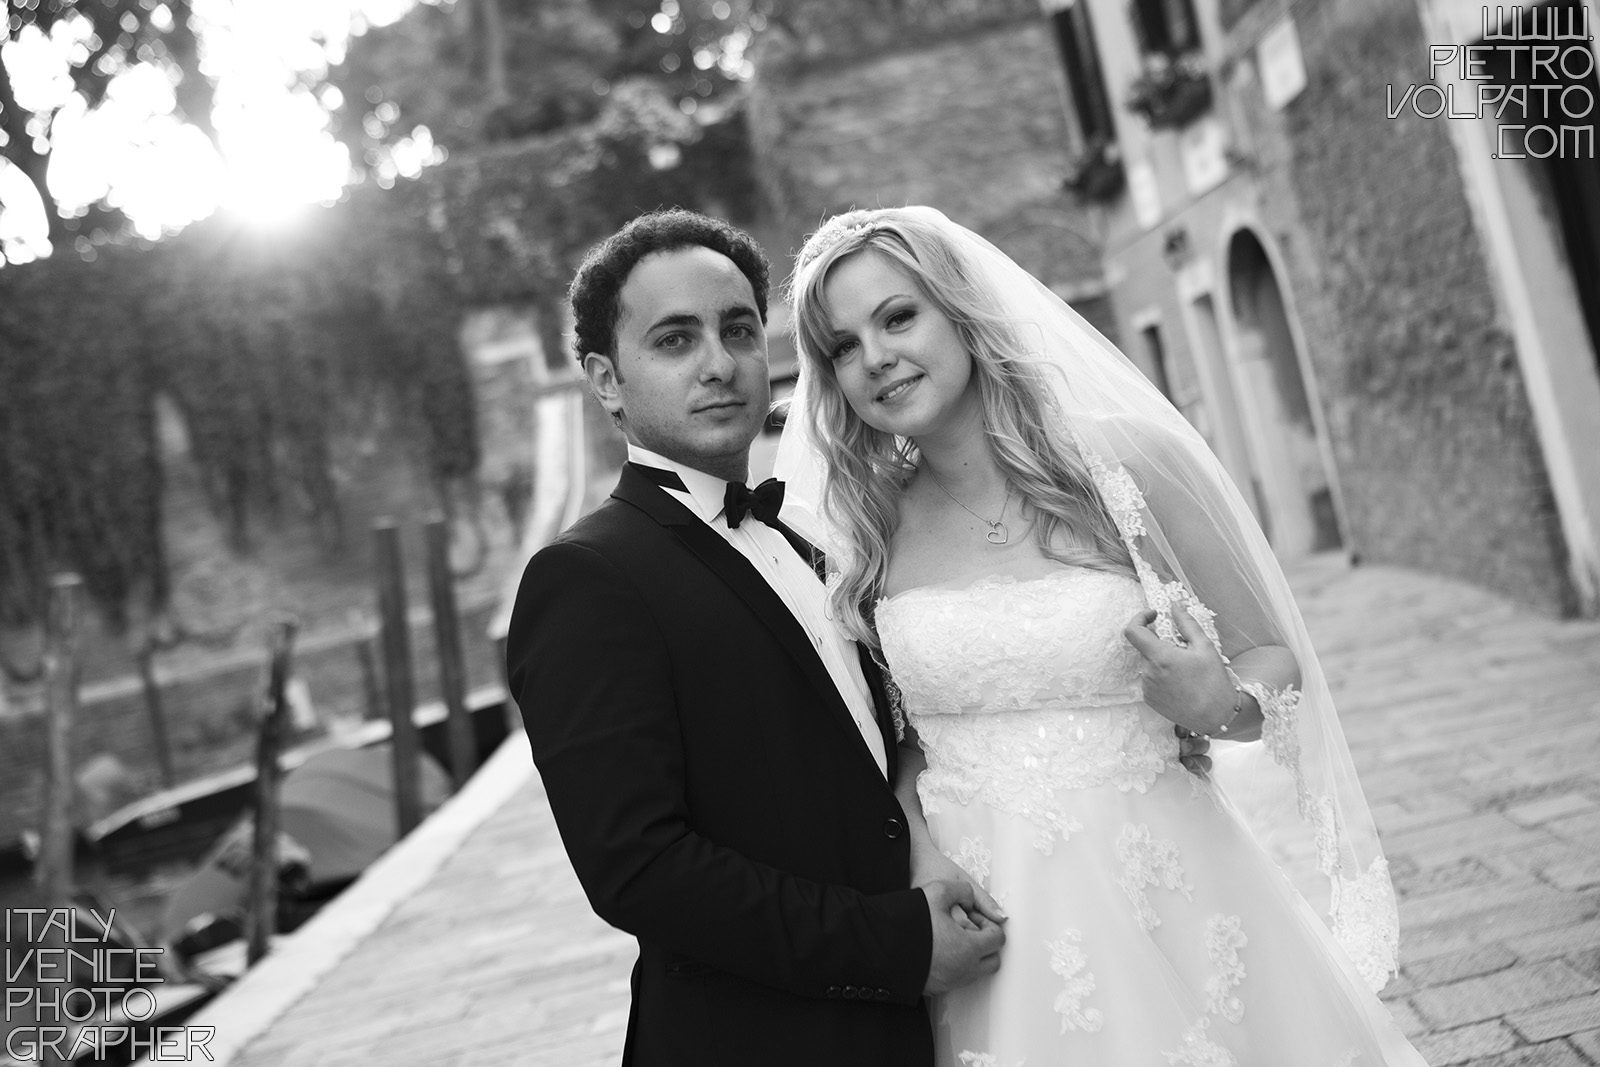 Venezia fotografo professionista per servizio fotografico viaggio di nozze sposi realizzato durante una passeggiata e un giro in gondola